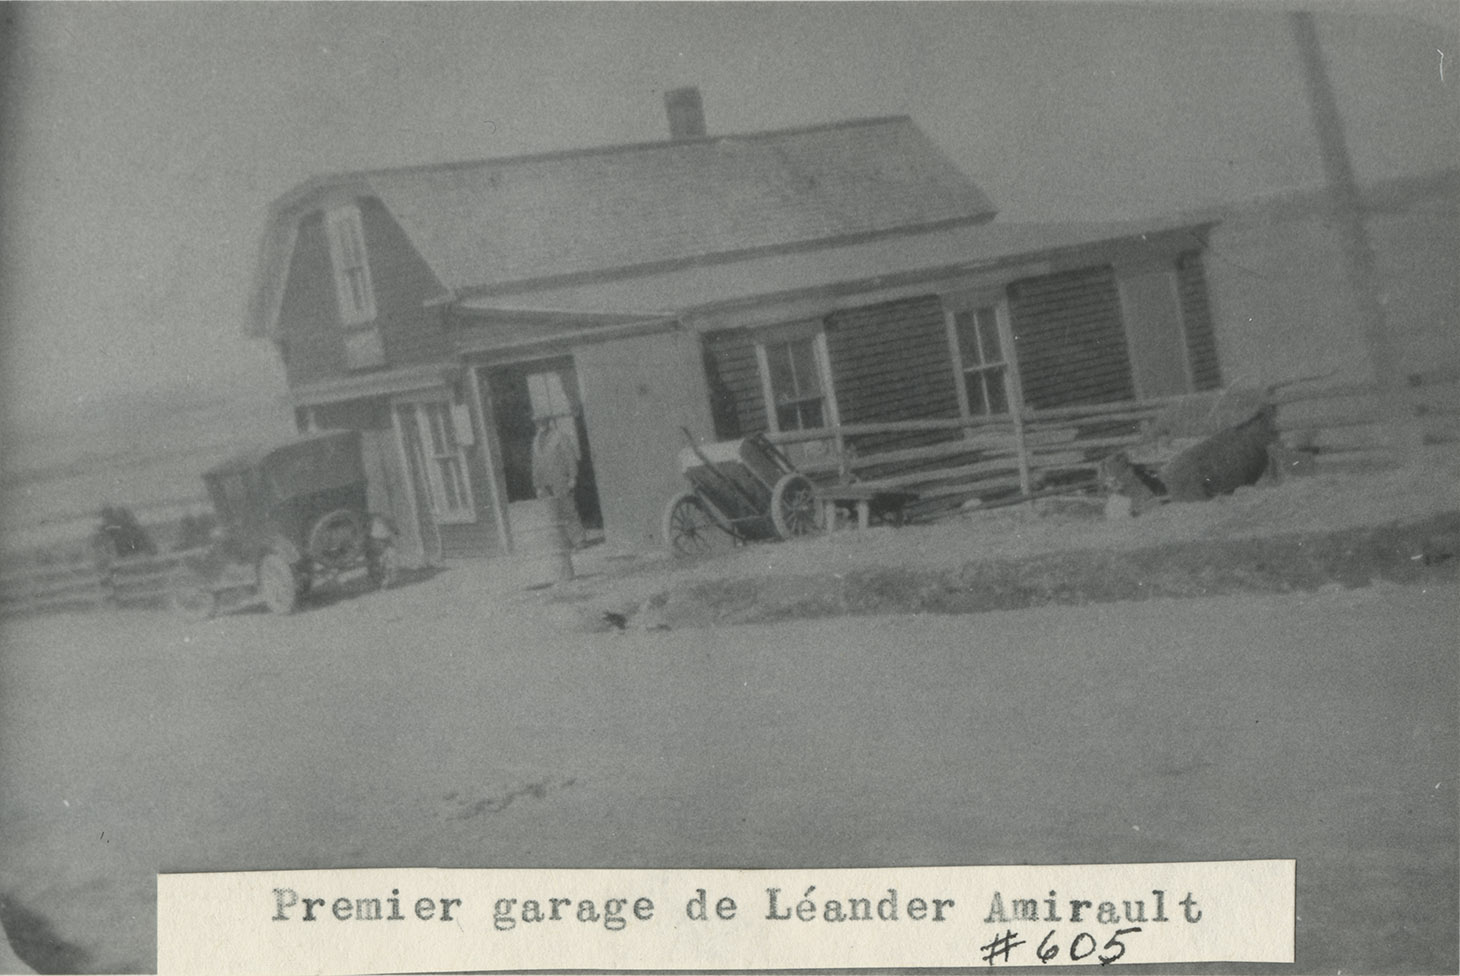 communityalbums - Léander Amirault’s first garage